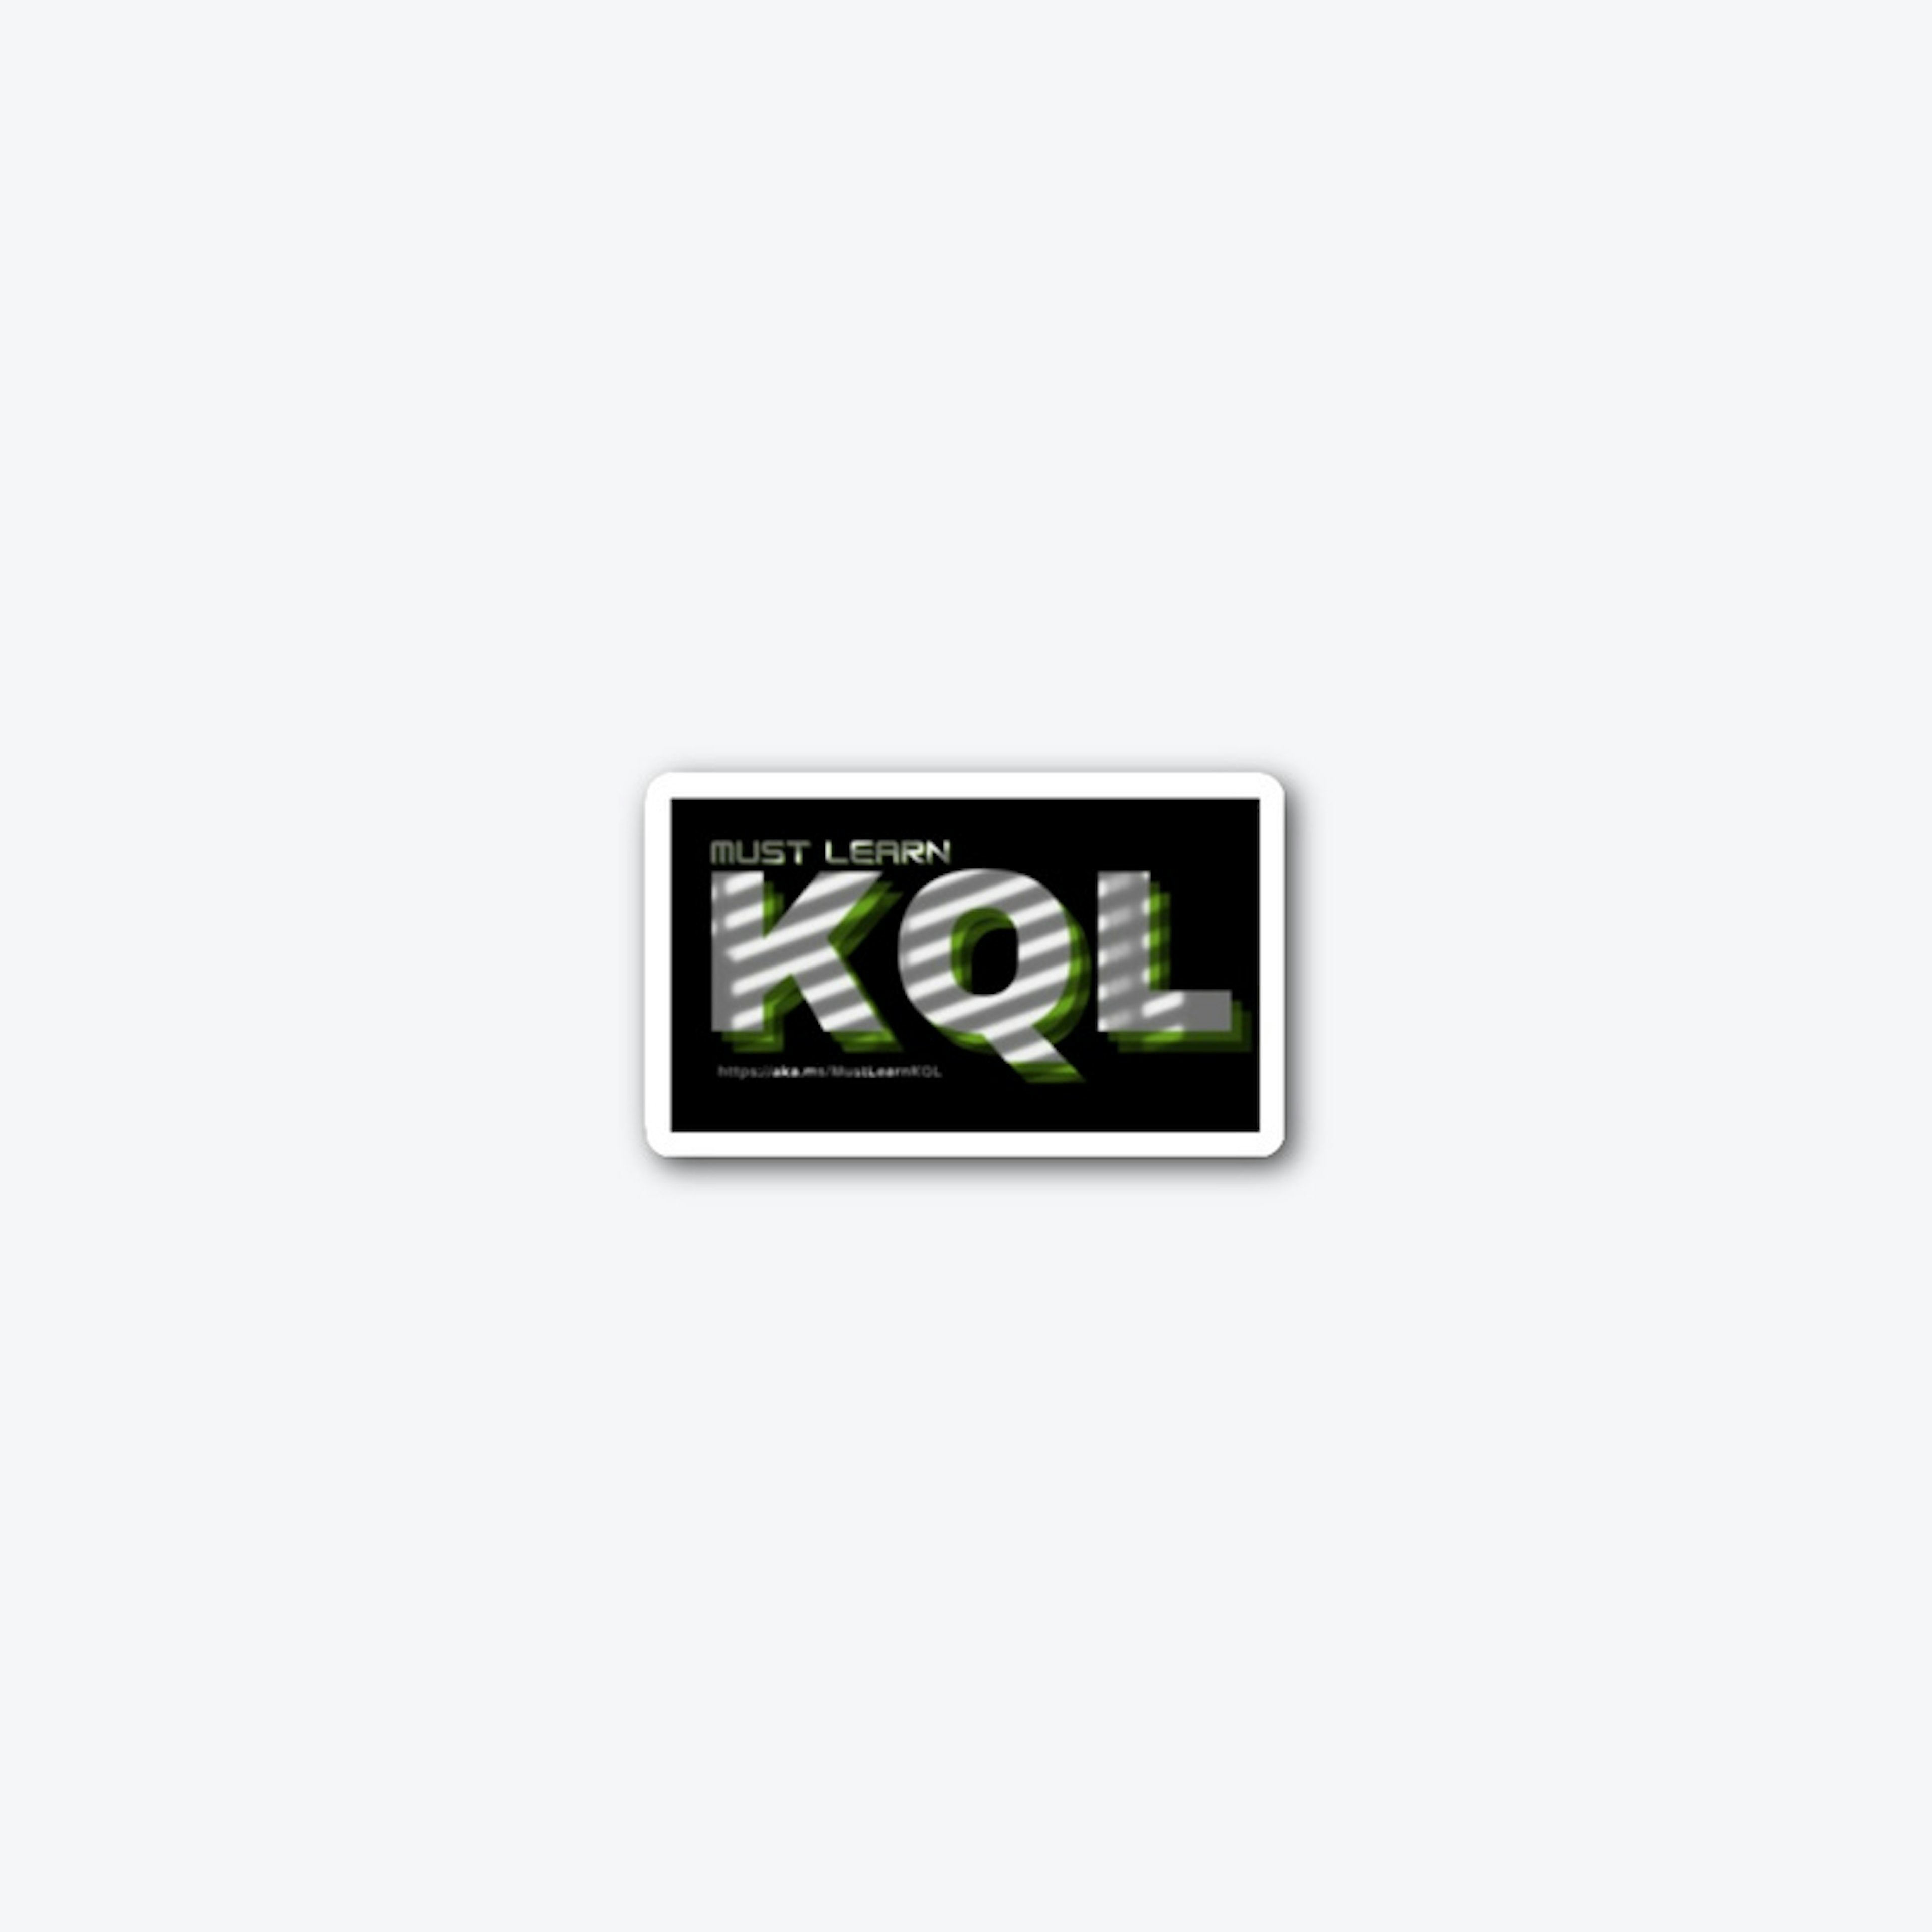 Must Learn KQL Sticker